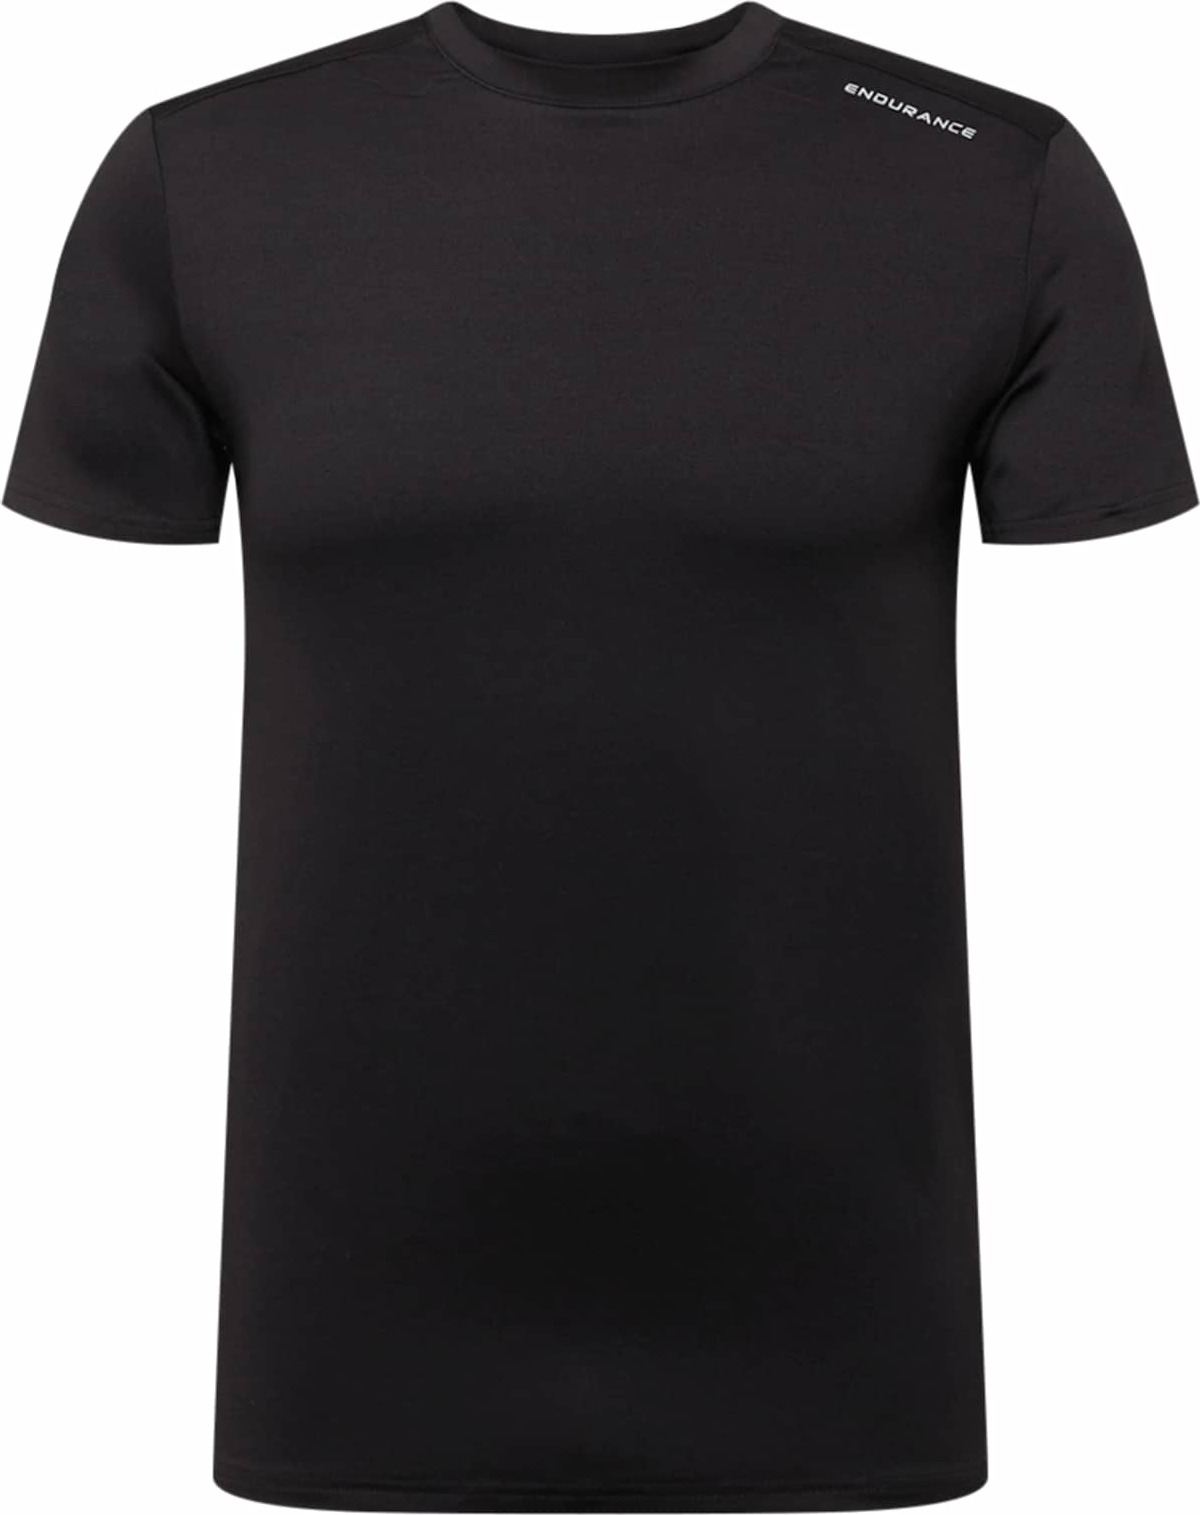 ENDURANCE Funkční tričko černá / bílá